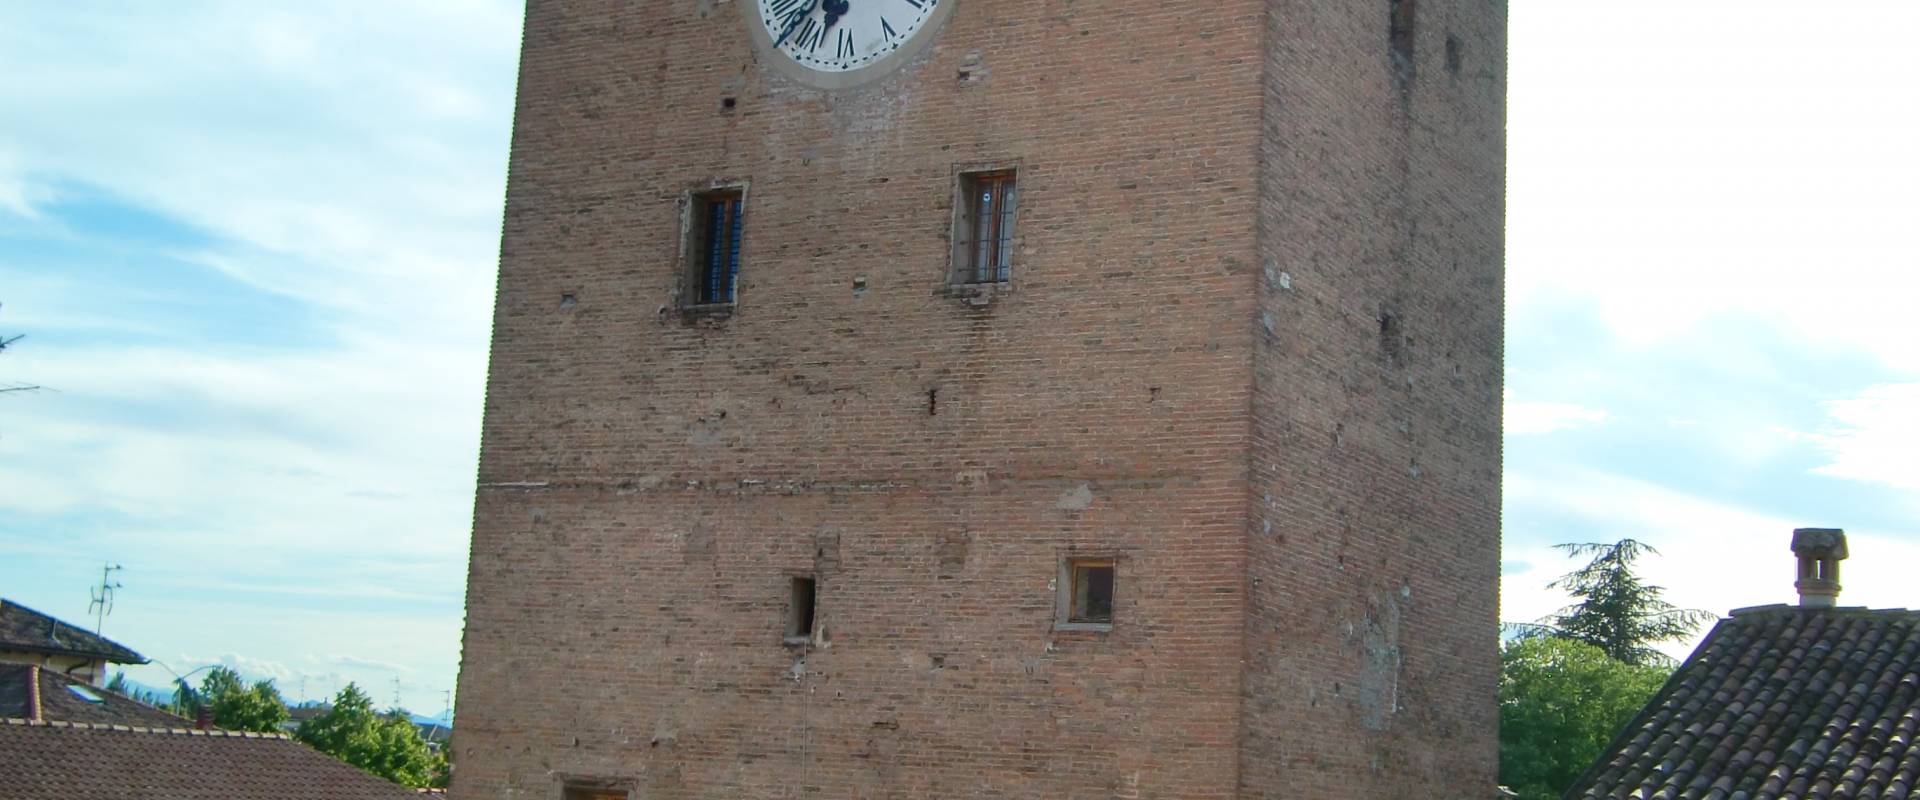 Torre dei Modenesi foto di 52AttilioRighi